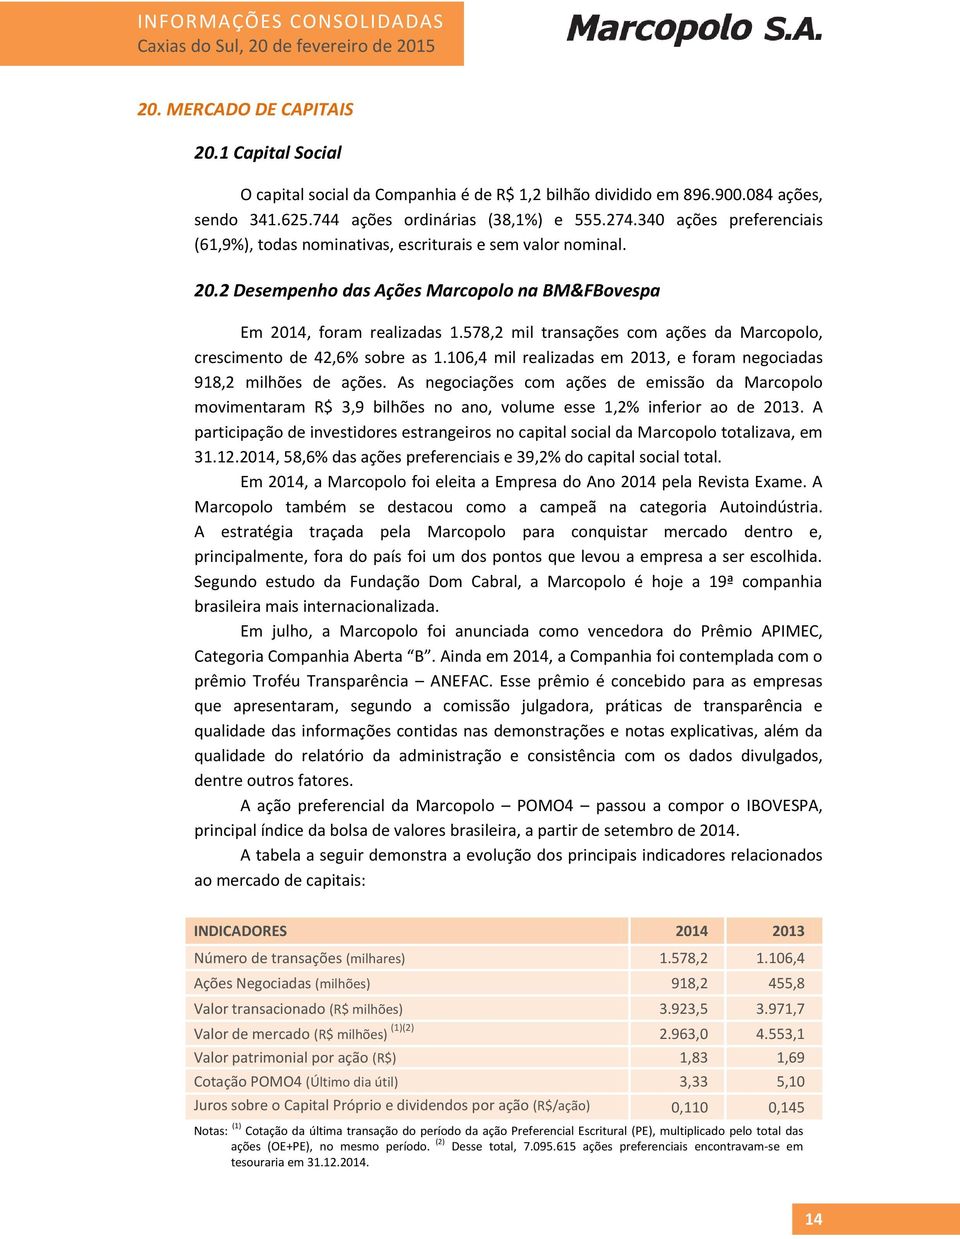 2 Desempenho das Ações Marcopolo na BM&FBovespa Em 2014, foram realizadas 1.578,2 mil transações com ações da Marcopolo, crescimento de 42,6% sobre as 1.